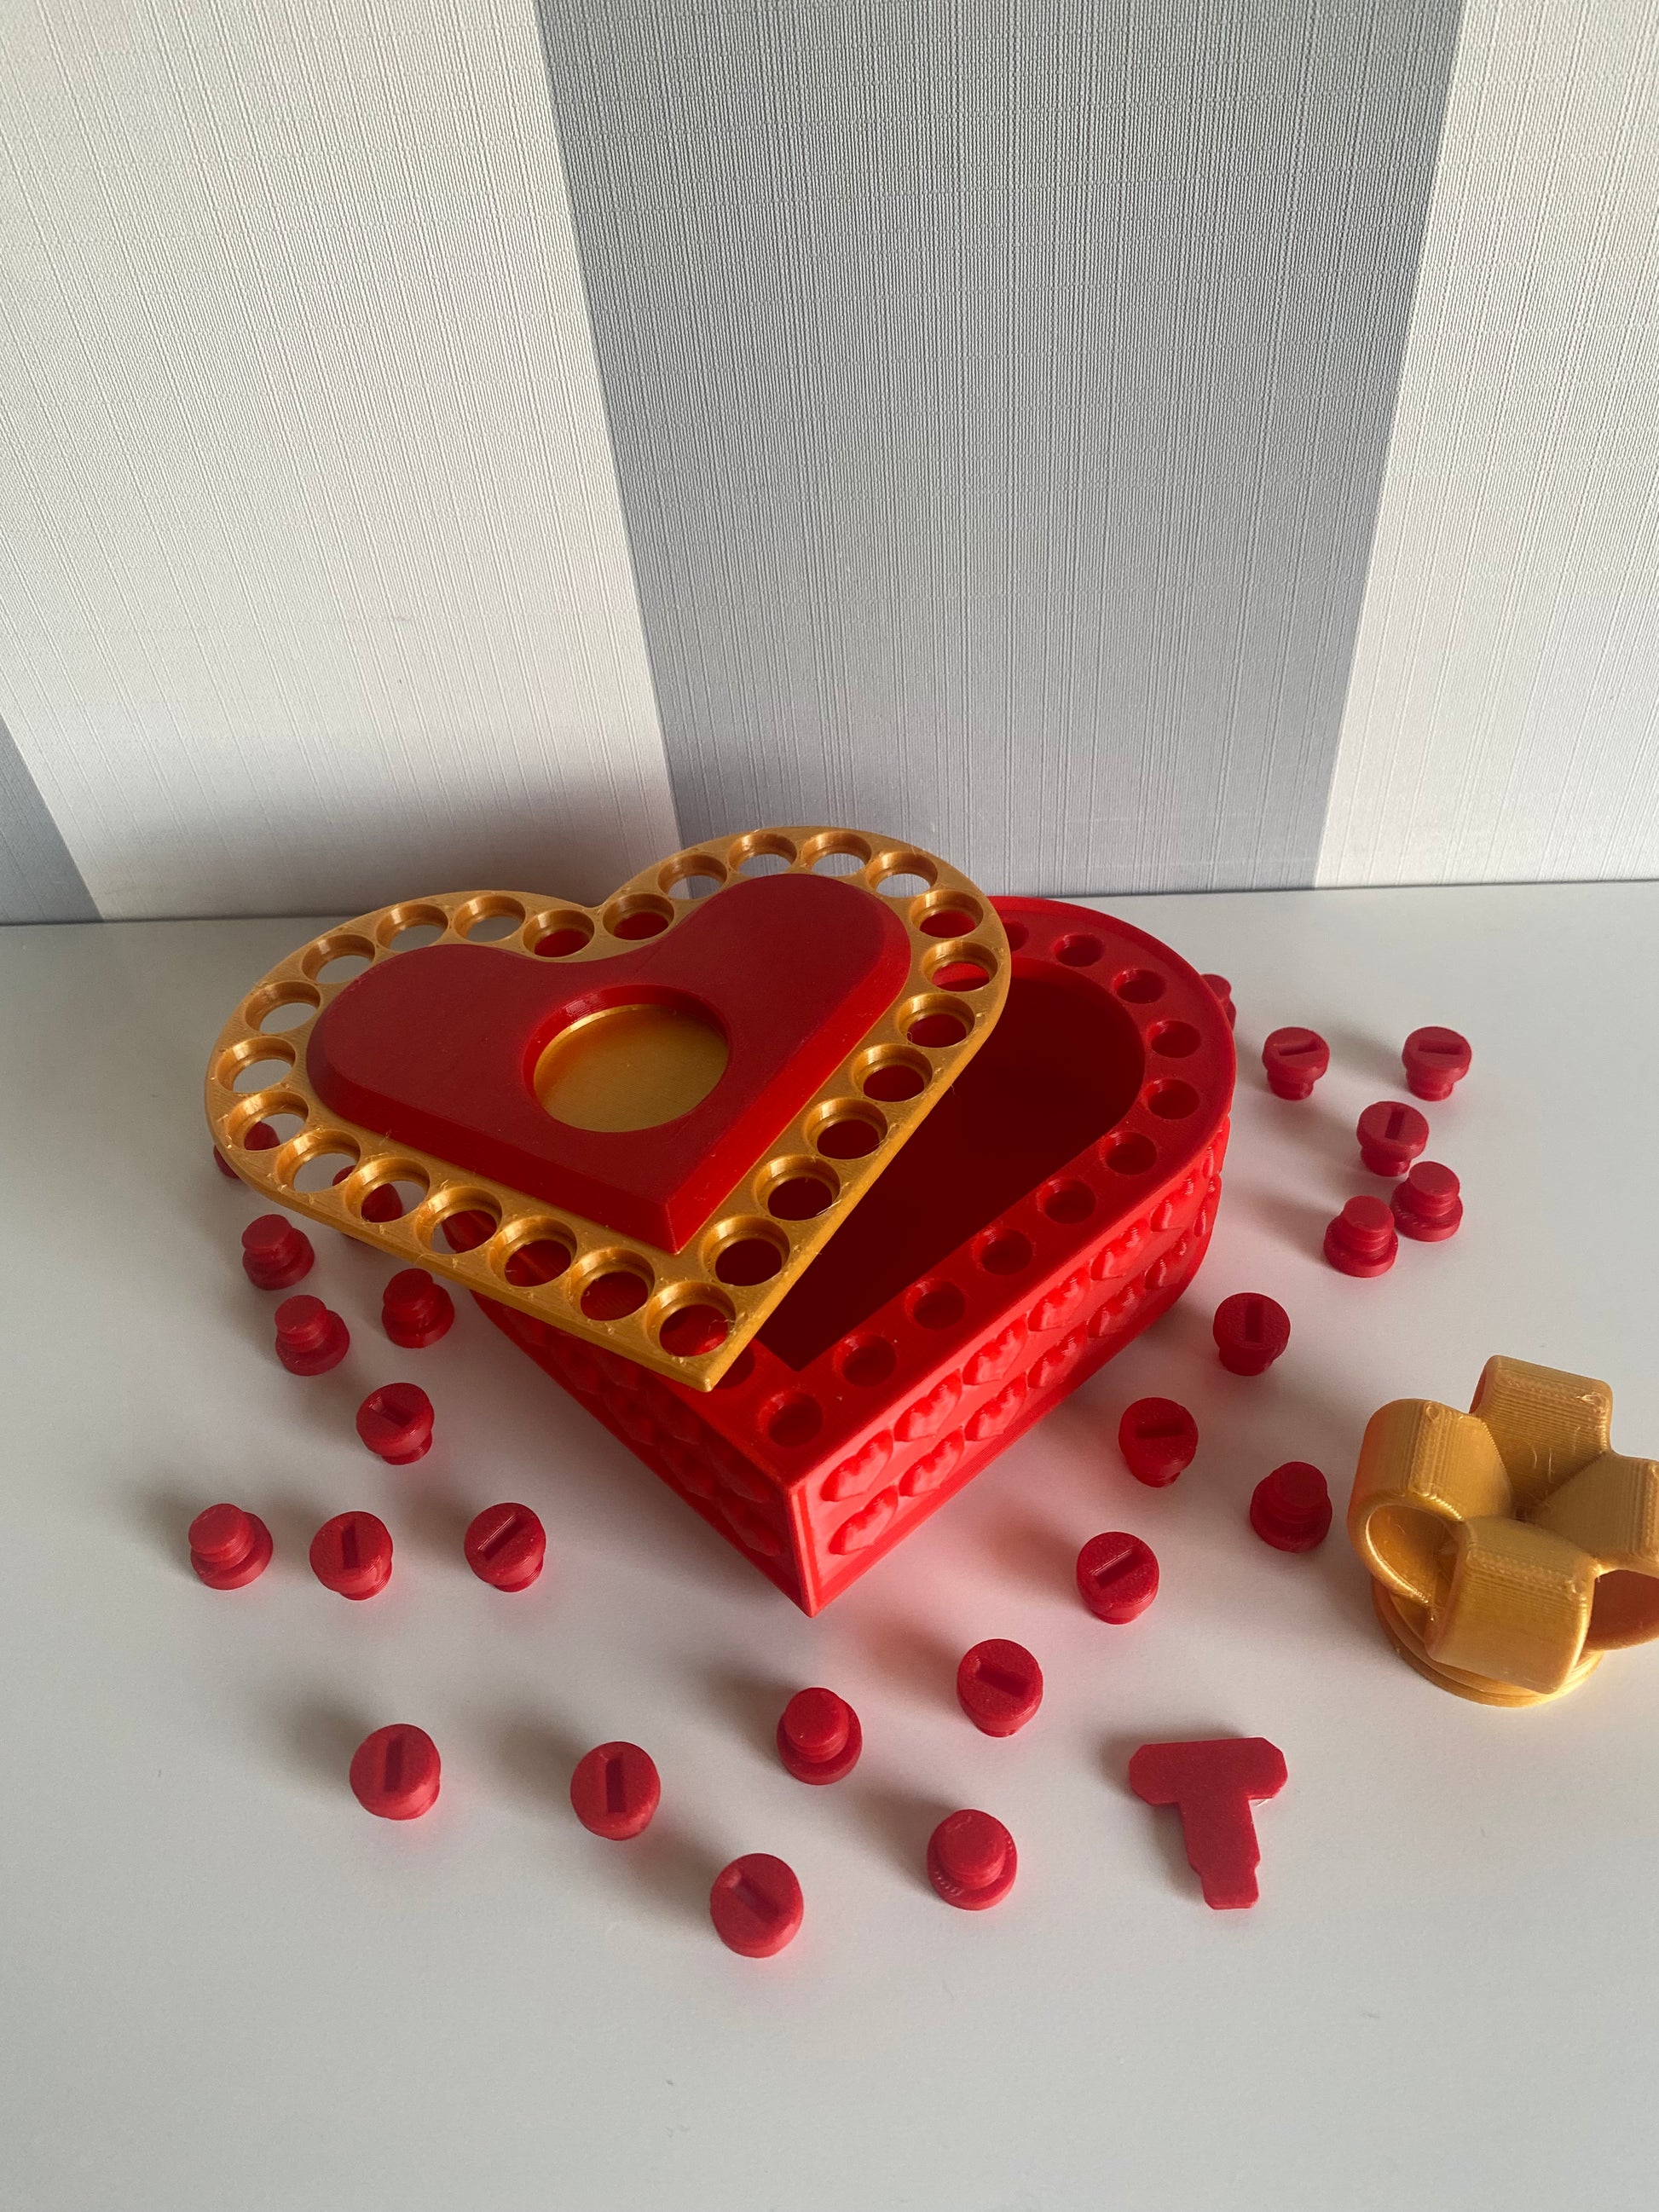 Gift Box - Caja sorpresa con cajon y corazon - DIY 